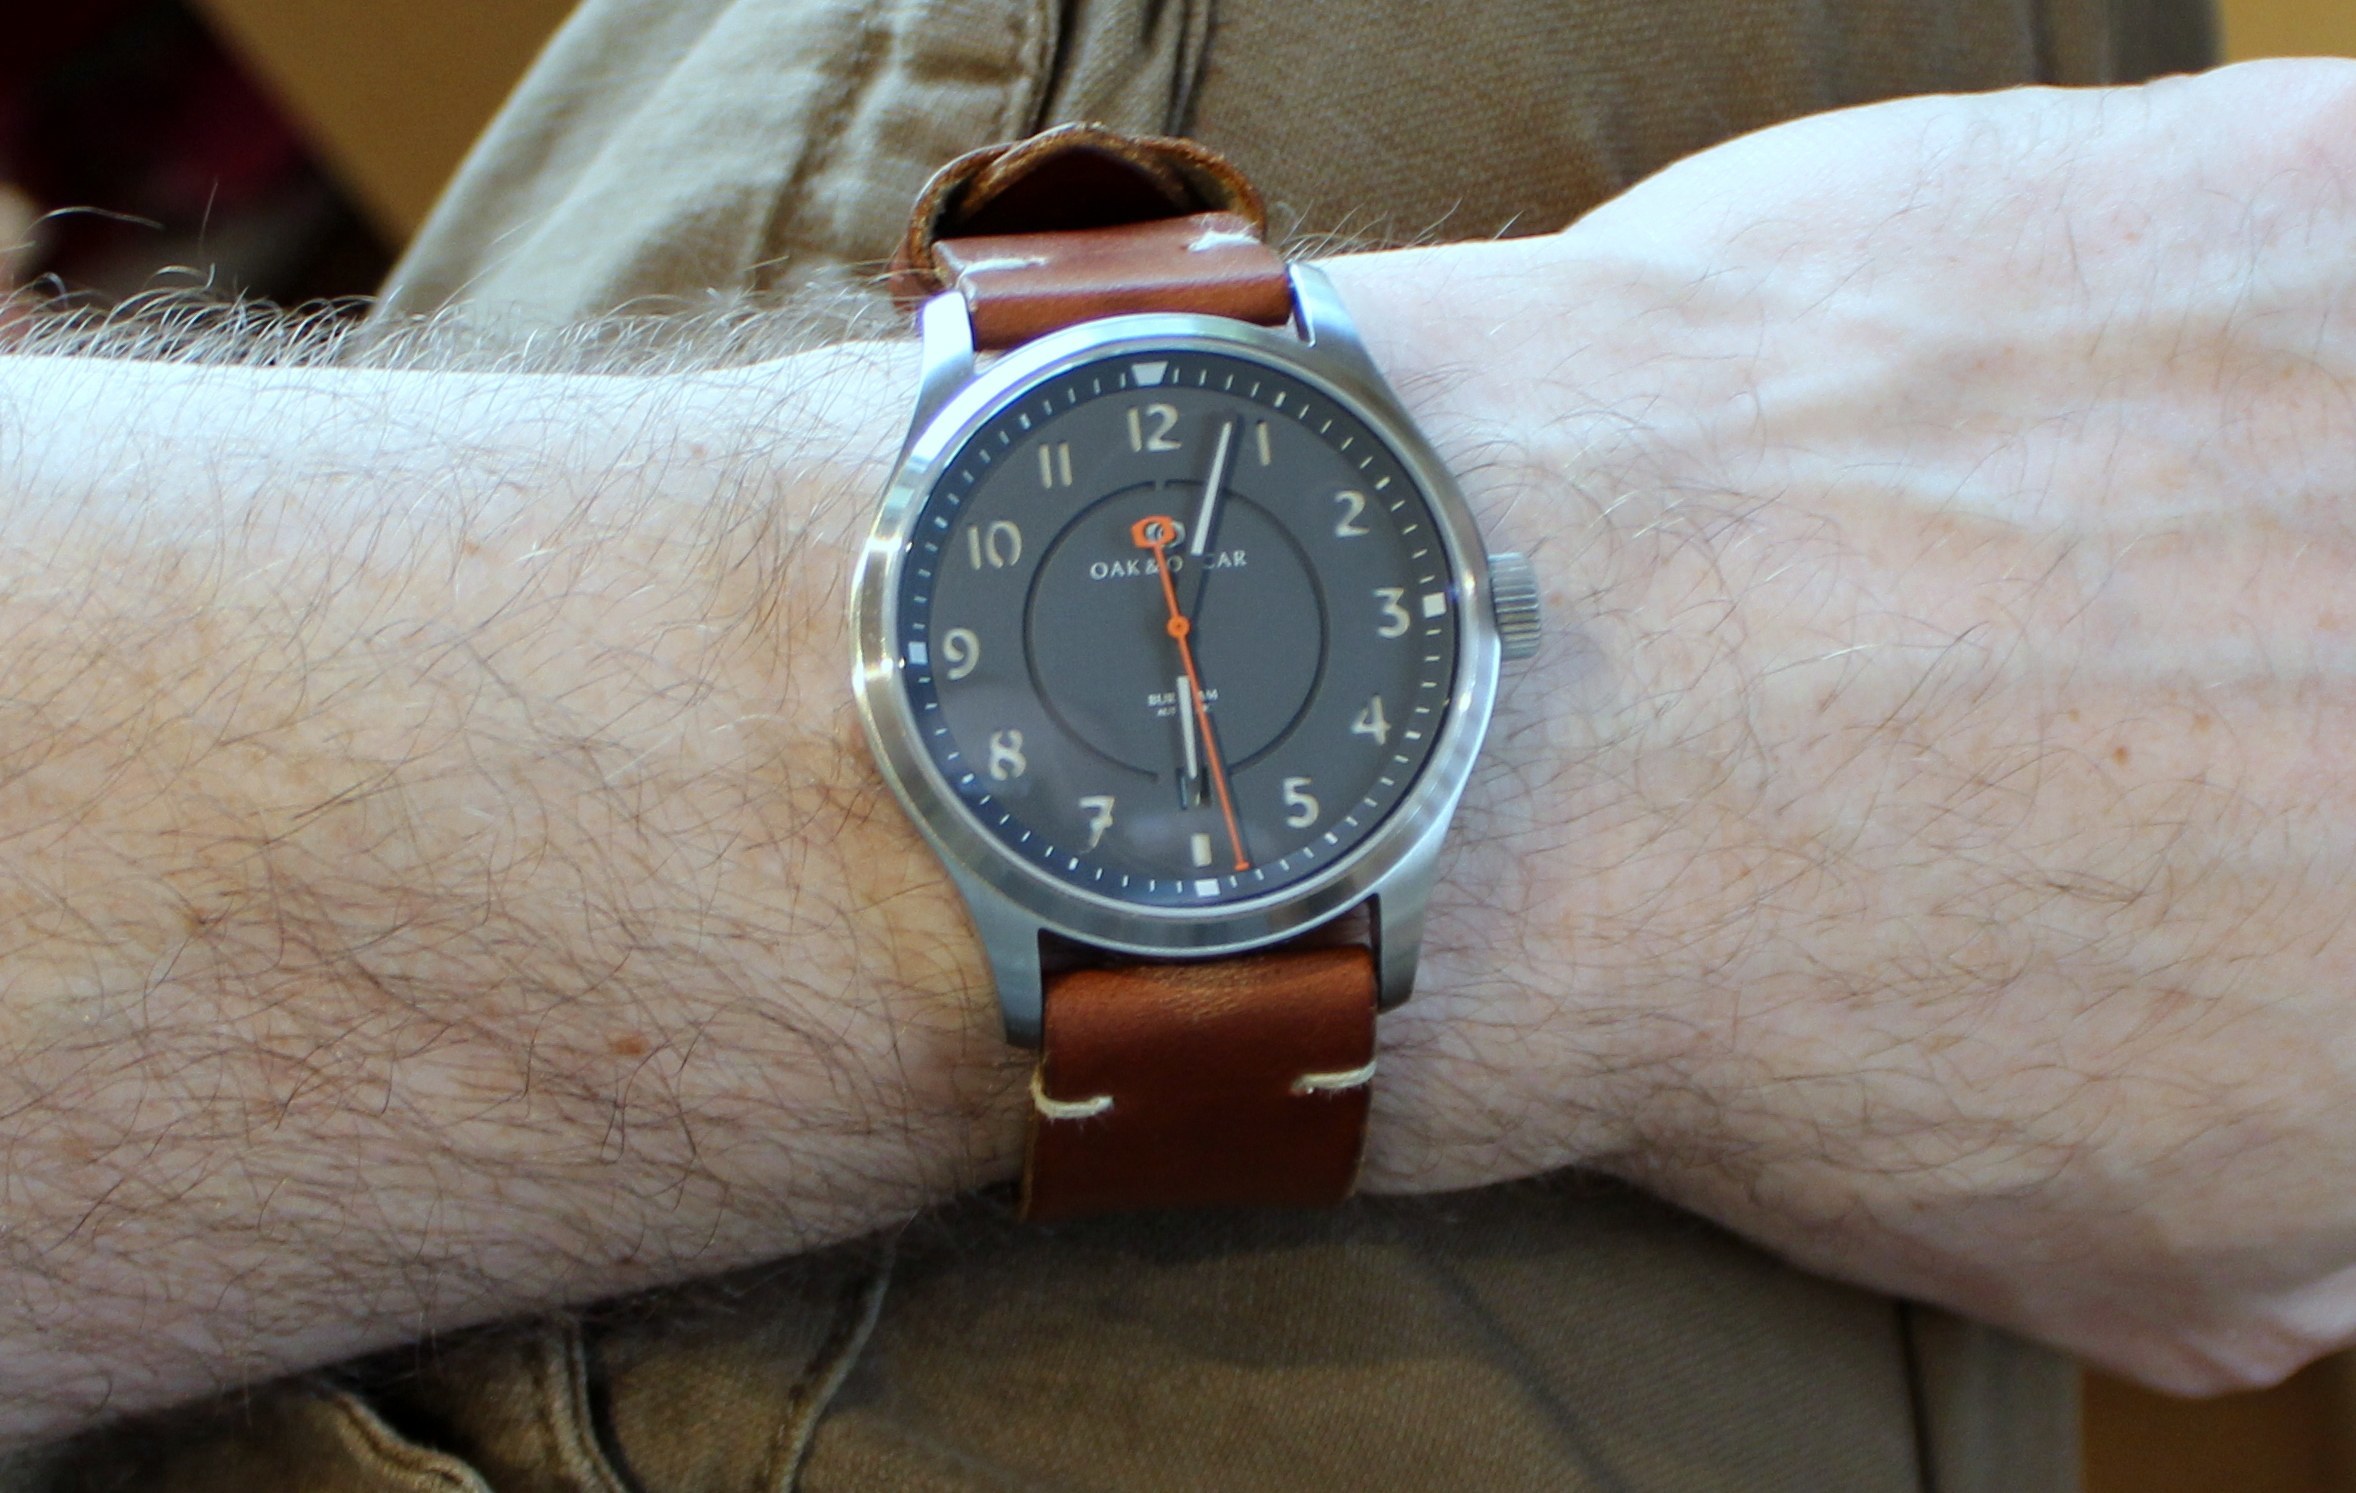 Oak & Oscar Burnham Watch Review Wrist Time Reviews 